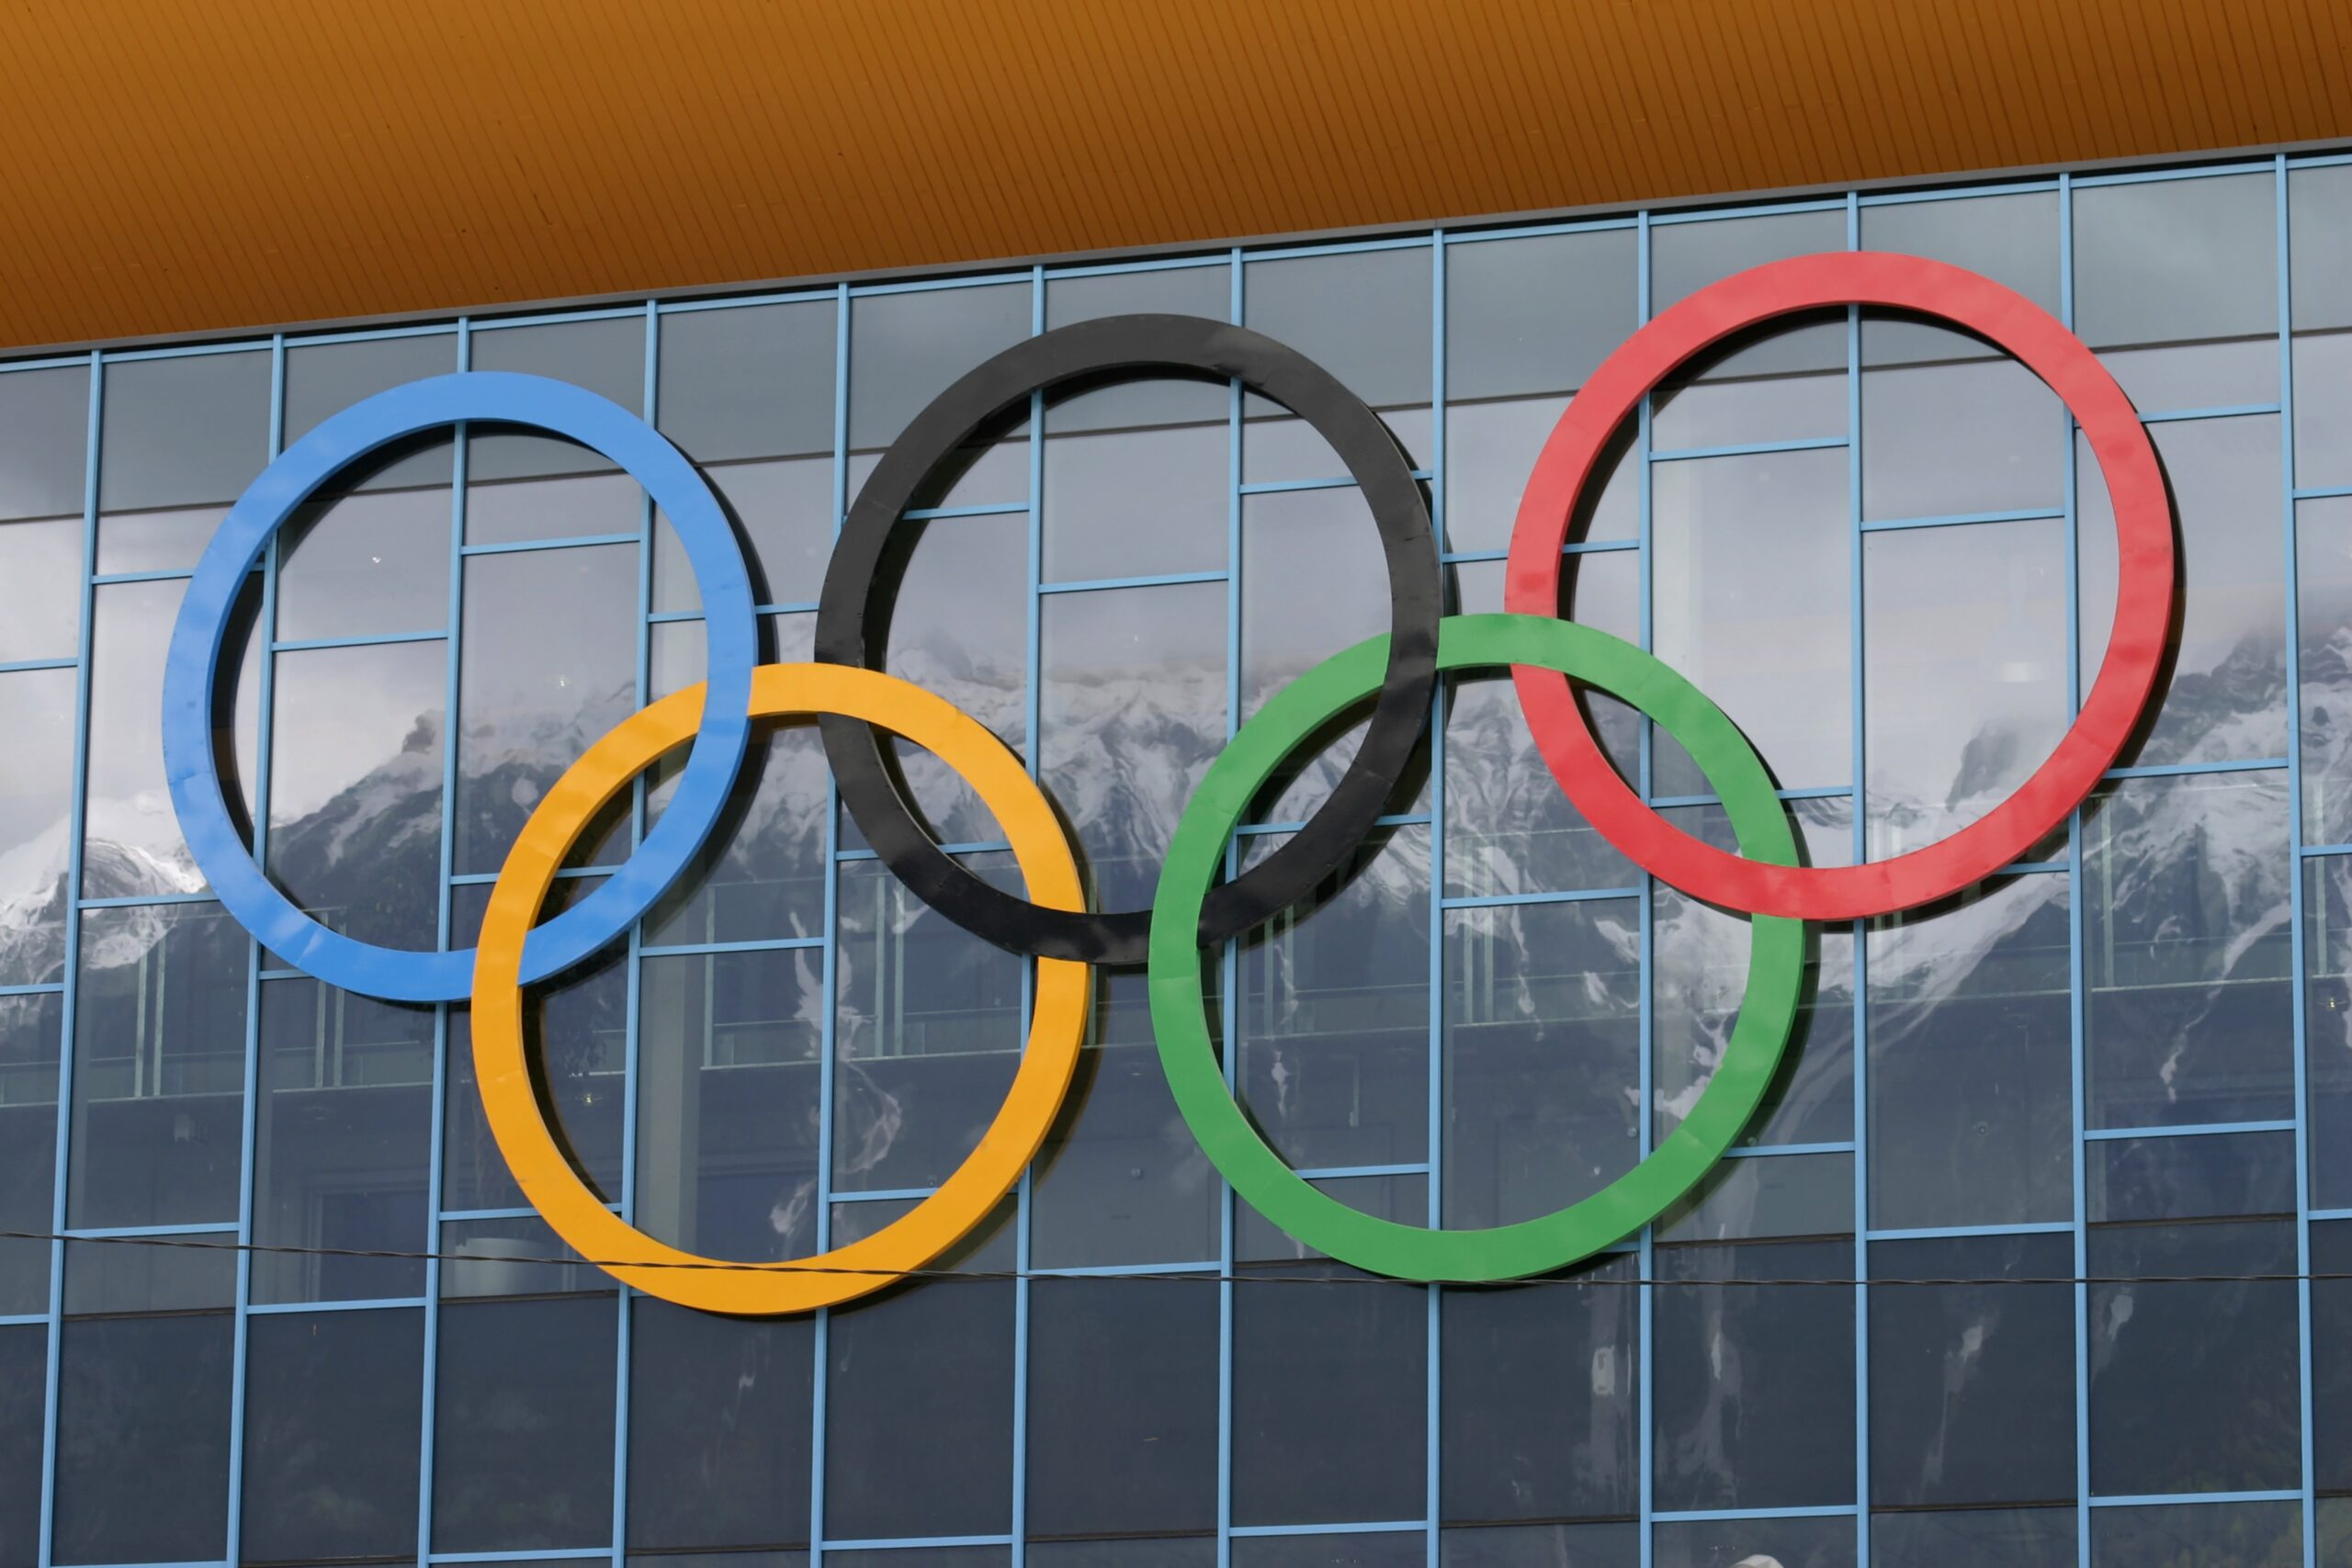 России хотят закрыть дорогу на две ближайшие Олимпиады 2024 и 2026 годов